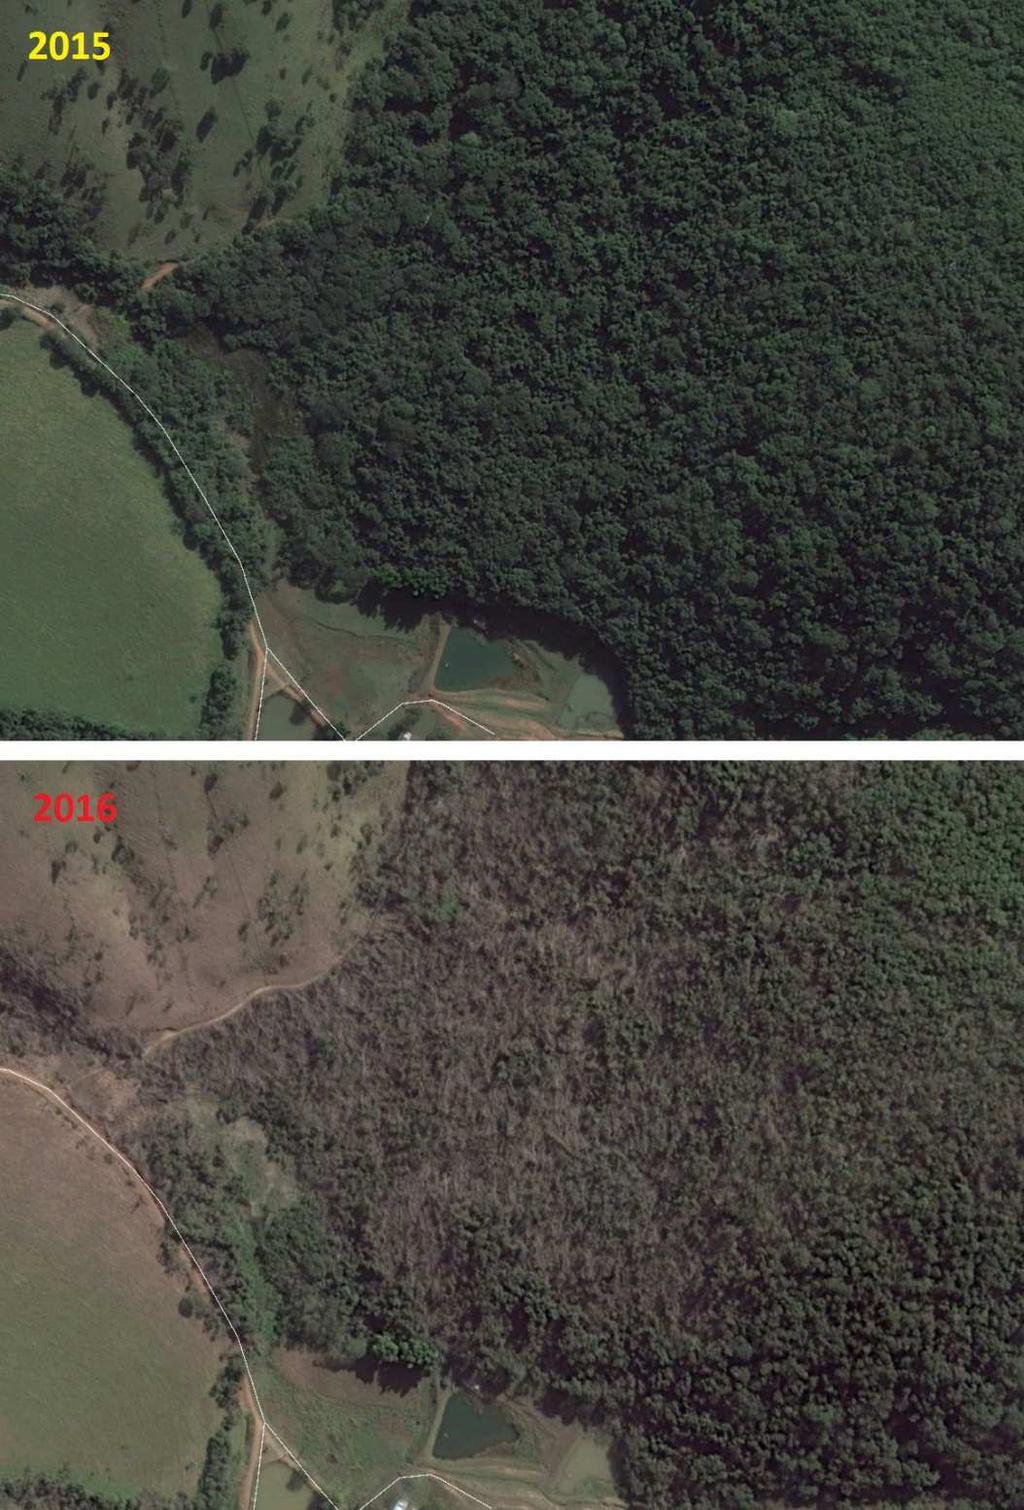 Ás áreas em Atibaia atingidas pelos vendavais seguem os mesmos padrões identificados nas imagens de satélite.